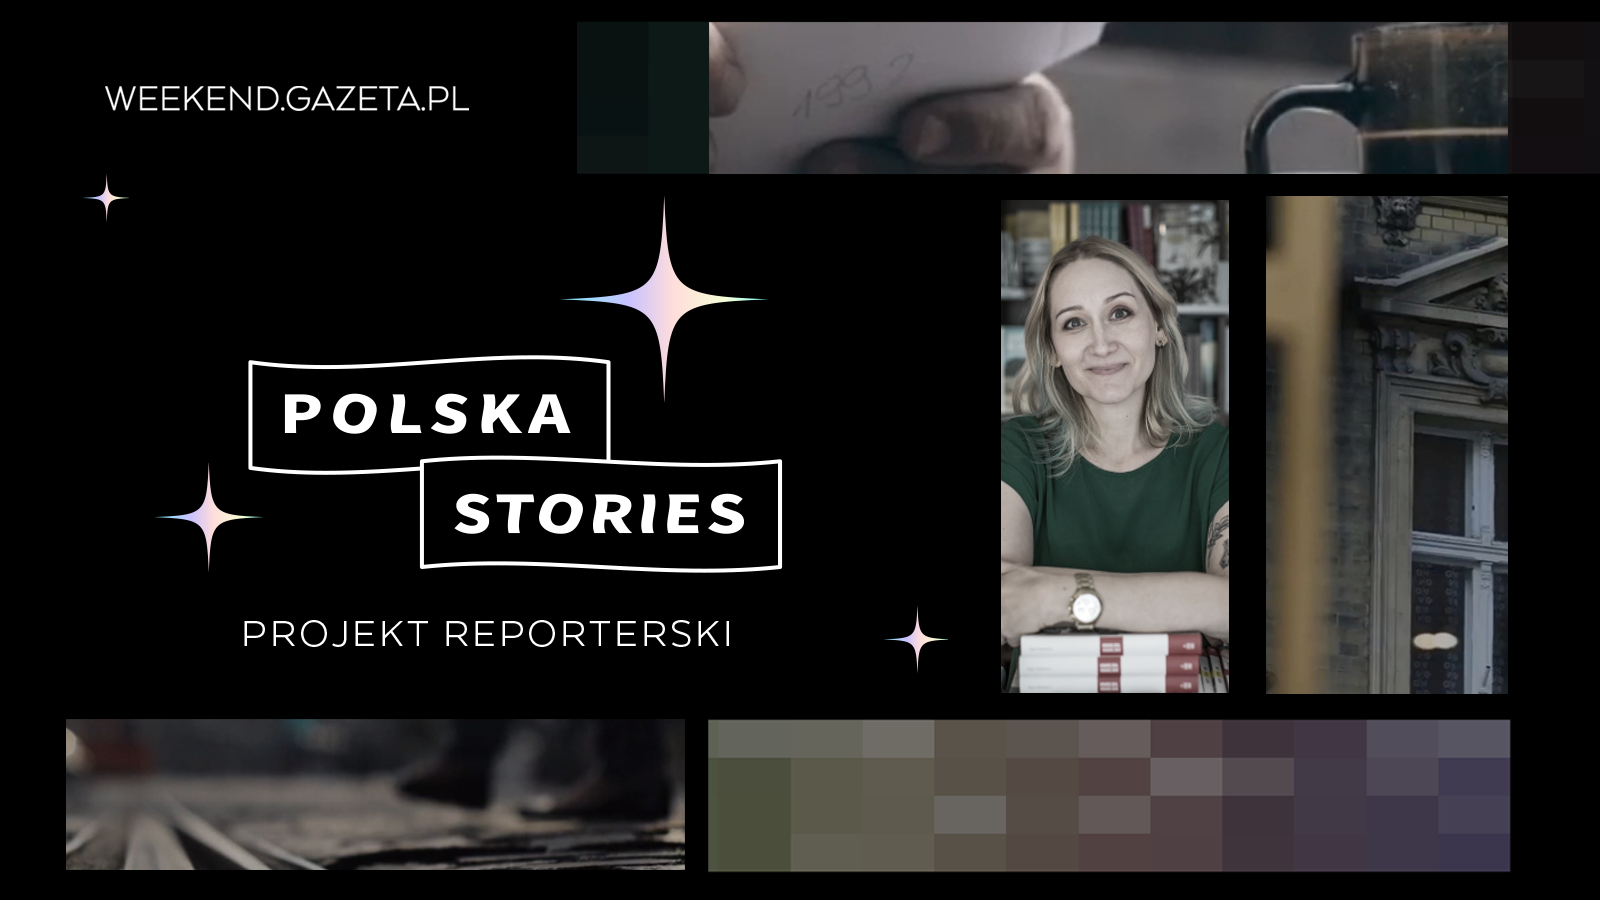 Weekend.Gazeta.pl rusza z projektem reporterskim „Polska Stories”